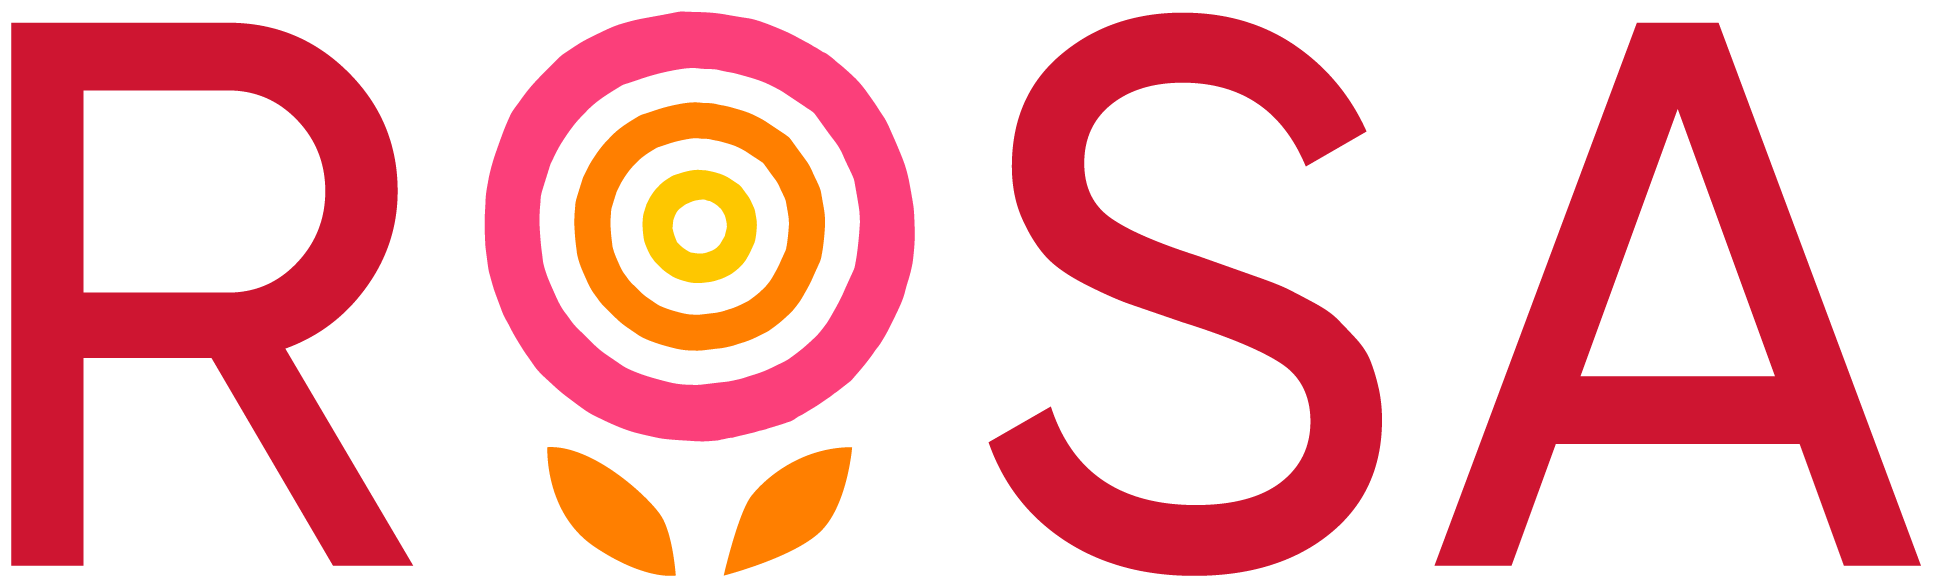 Rosa Charity logo